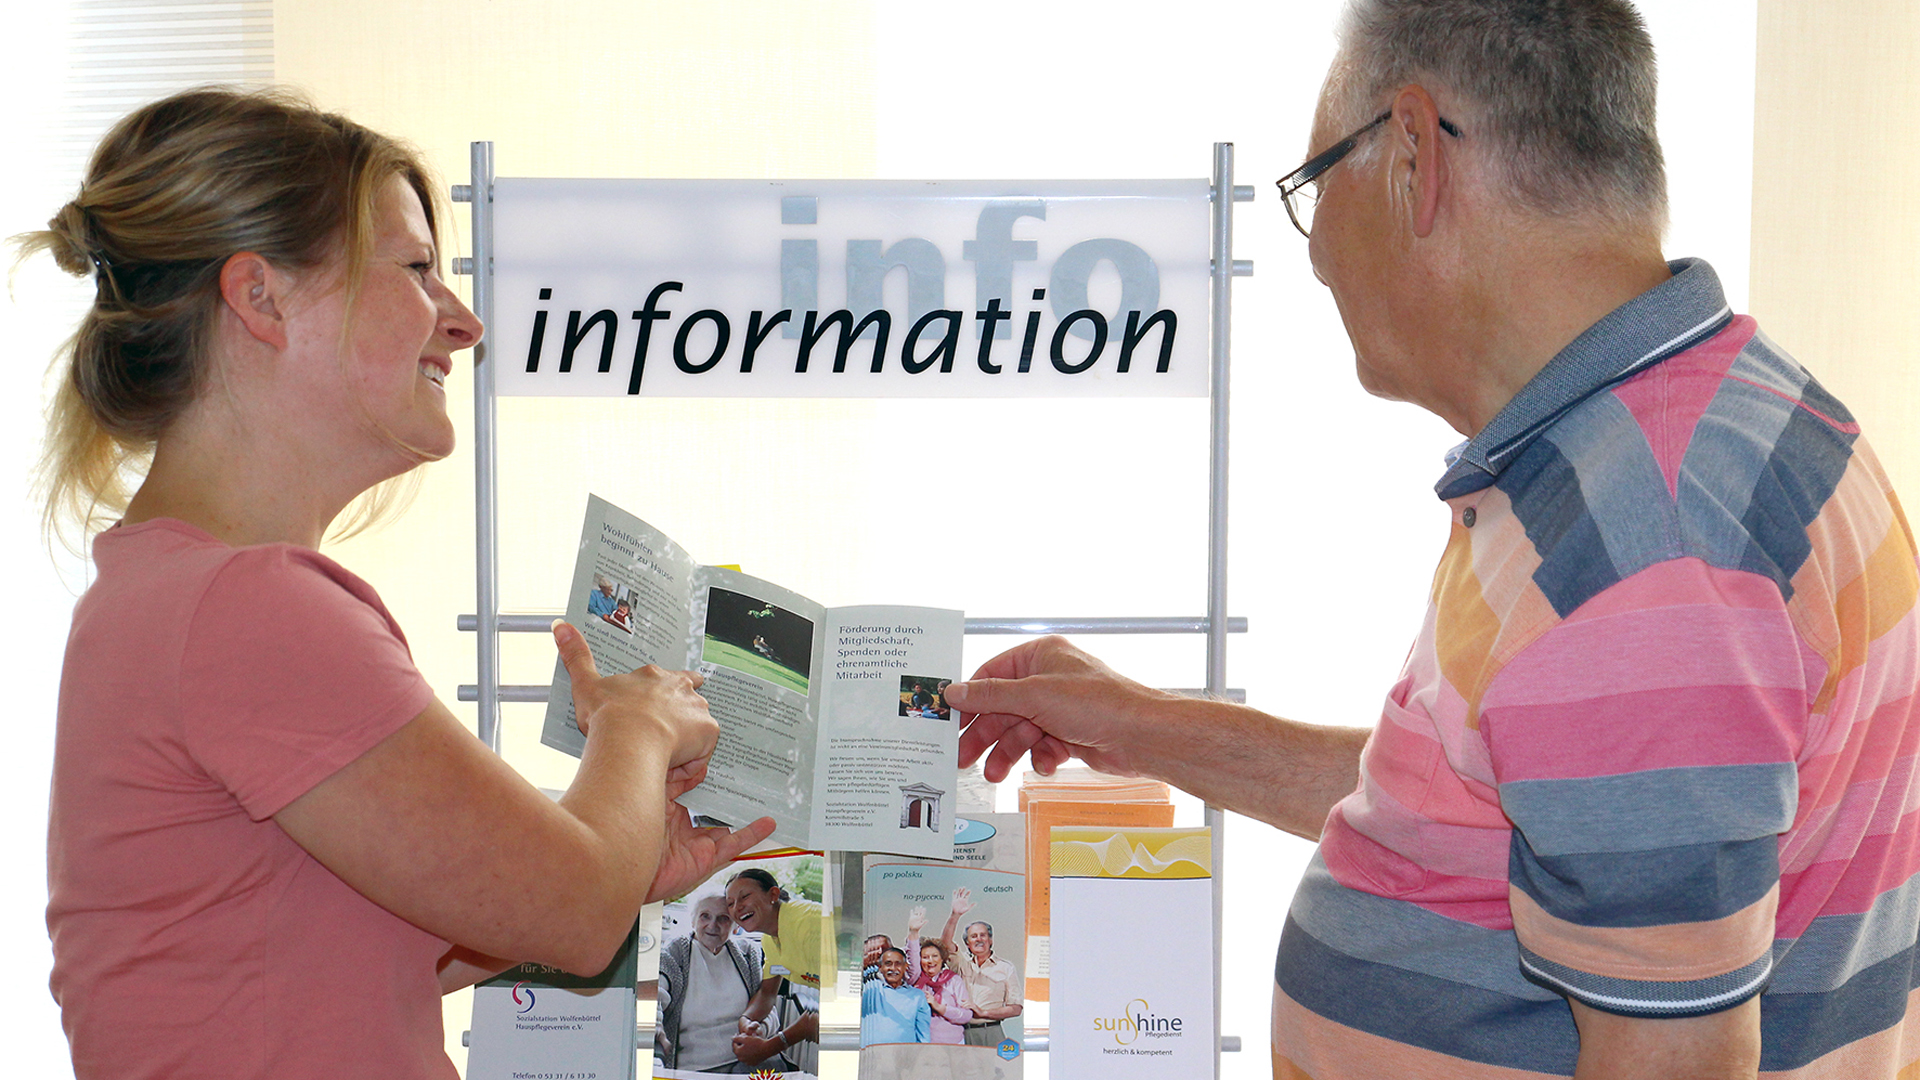 Eine junge Frau steht mit einem älteren Herrn an einem Prospektständer mit der Aufschrift "Information" und zeigt ihm einen aufgeschlagenen Informationsflyer.